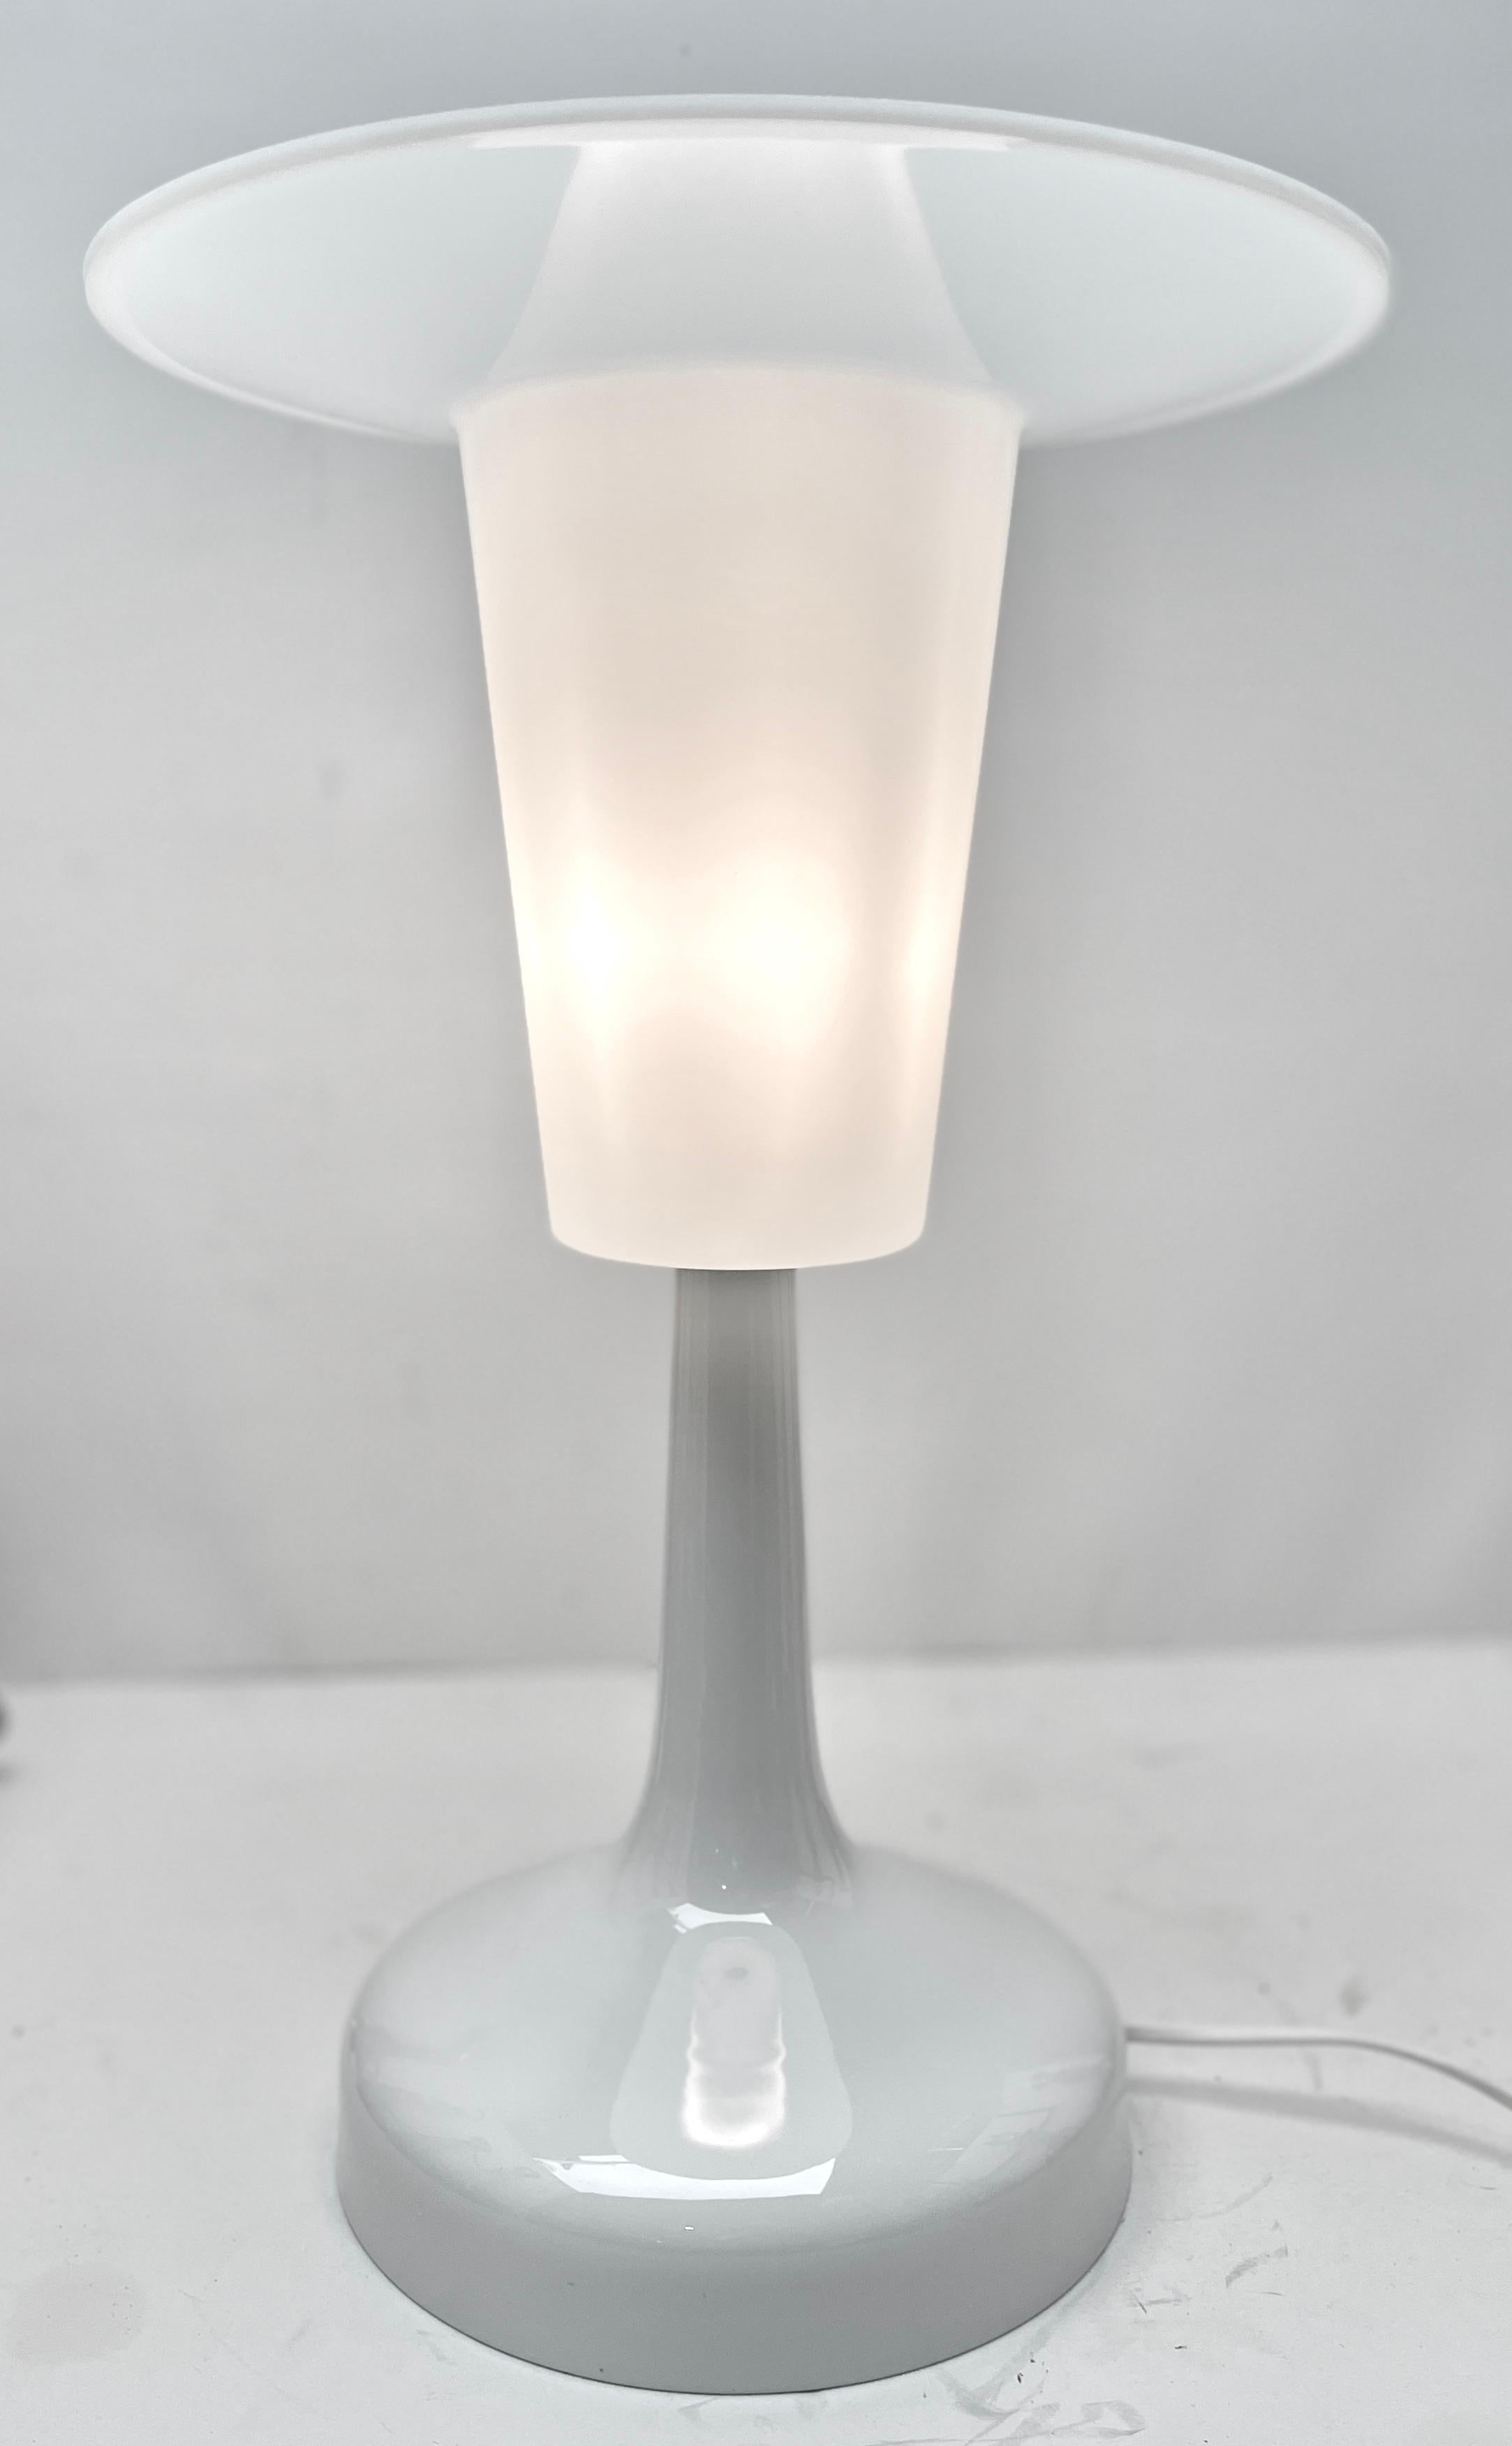 Klassisches kompaktes Design von Rosenthal, diese Spotlight-Schreibtischlampe wurde von Rosenthal hergestellt

Der Ständer ist weißes Porzellan die Lampe ist vollständig original und in gutem Zustand
und wurde unrestauriert belassen.
Sie ist voll